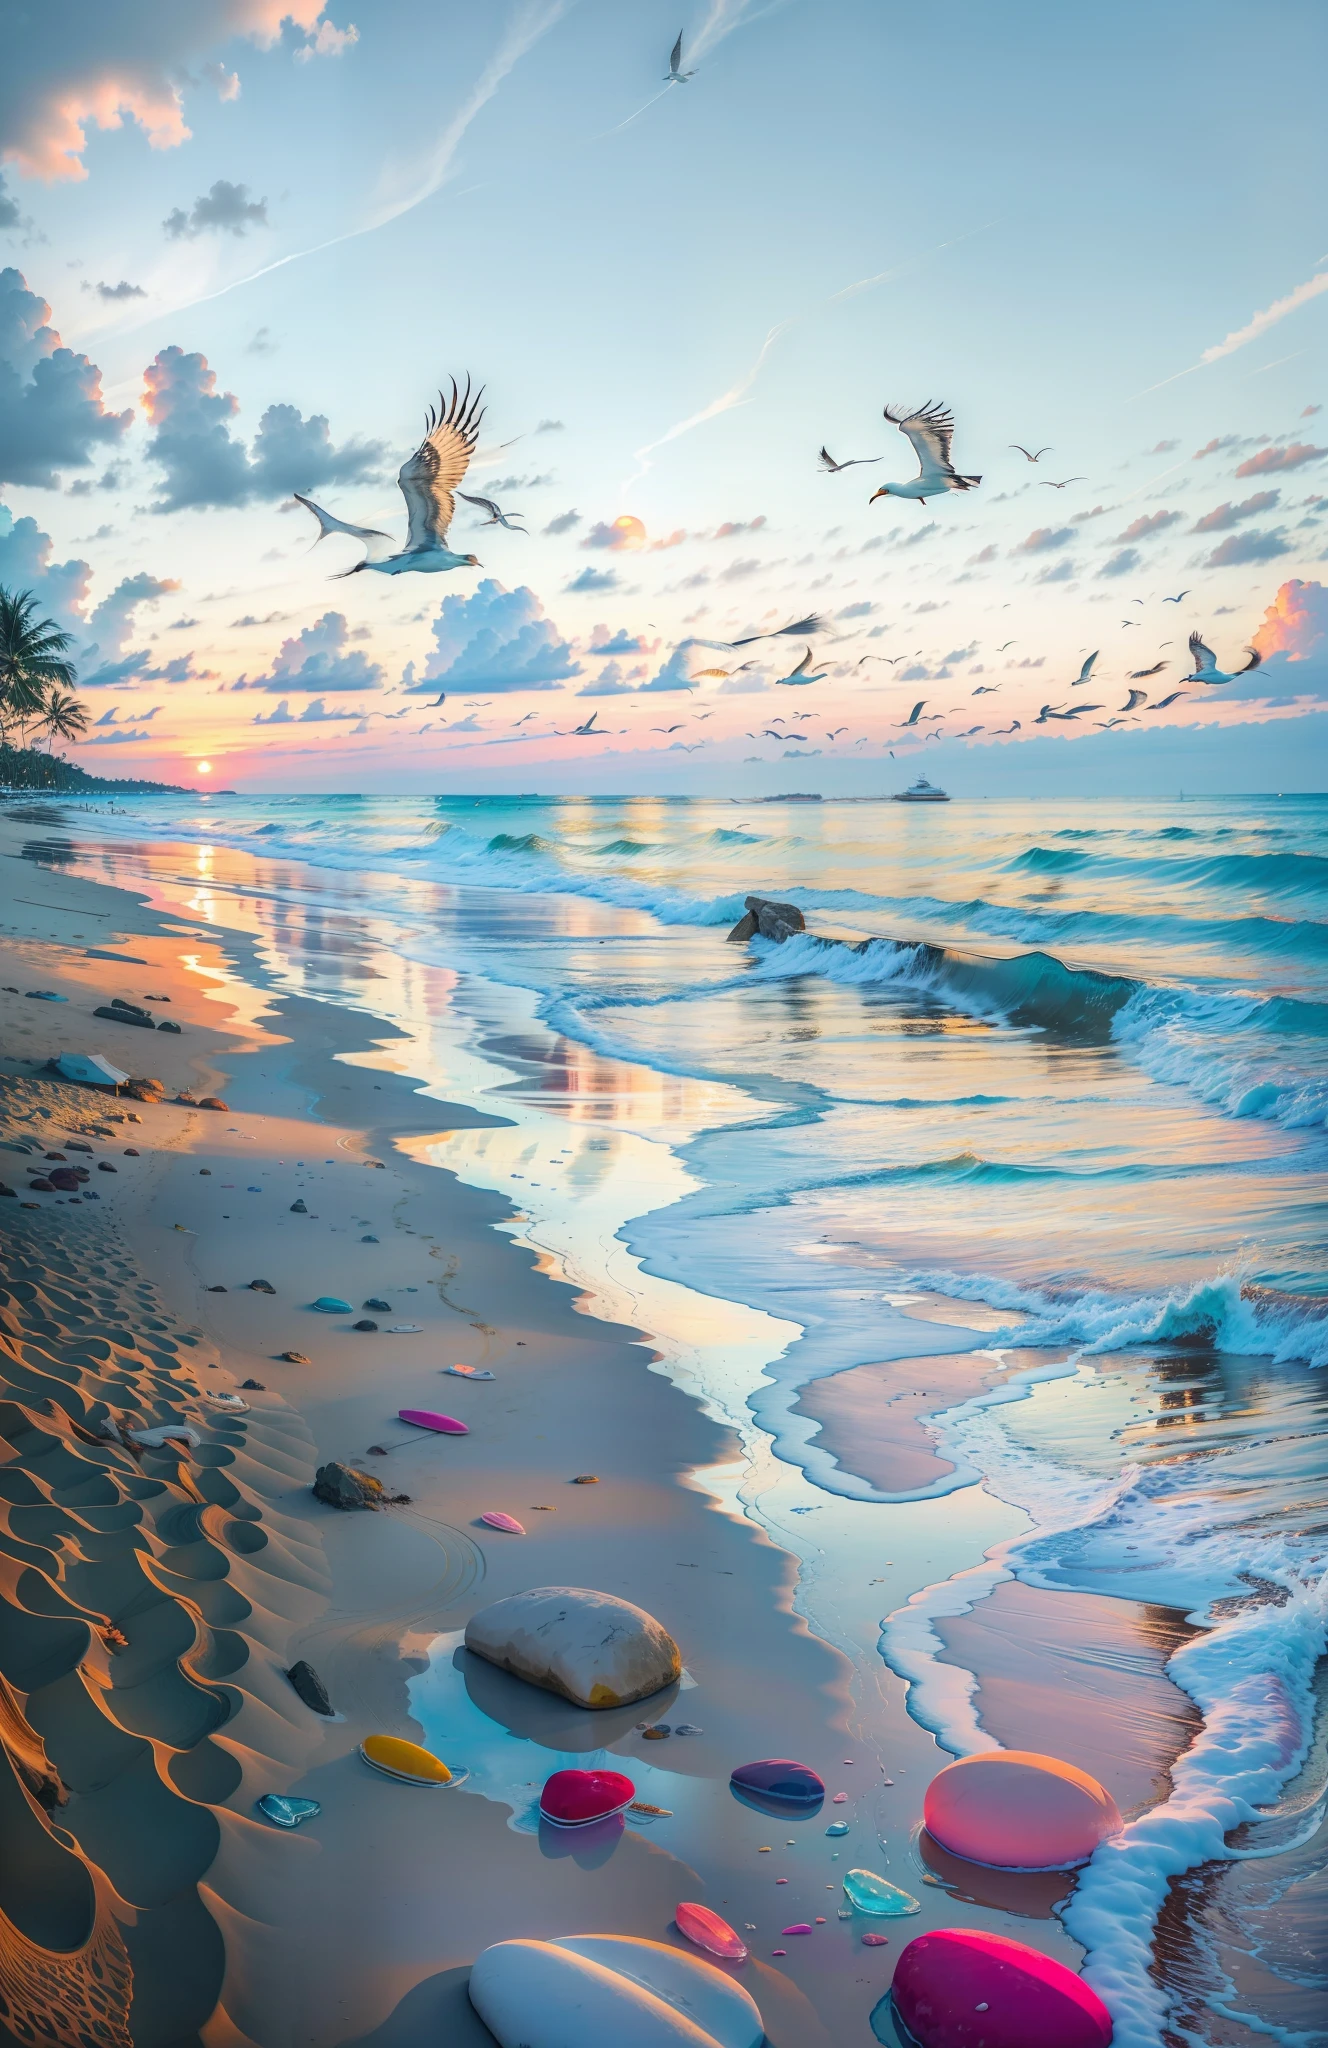 La playa está cubierta de coloridas piedras lisas transparentes.: 1.5, una puesta de sol absolutamente fascinante en la playa con una mezcla de naranja, rosa y amarillo en el cielo. El agua es cristalina., besando suavemente la orilla, y la playa de arena blanca se extiende hasta donde alcanza la vista. La escena es dinámica e impresionante., con gaviotas volando alto en el cielo y palmeras balanceándose suavemente. Empápate del ambiente relajante y deja que la tranquilidad te envuelva.